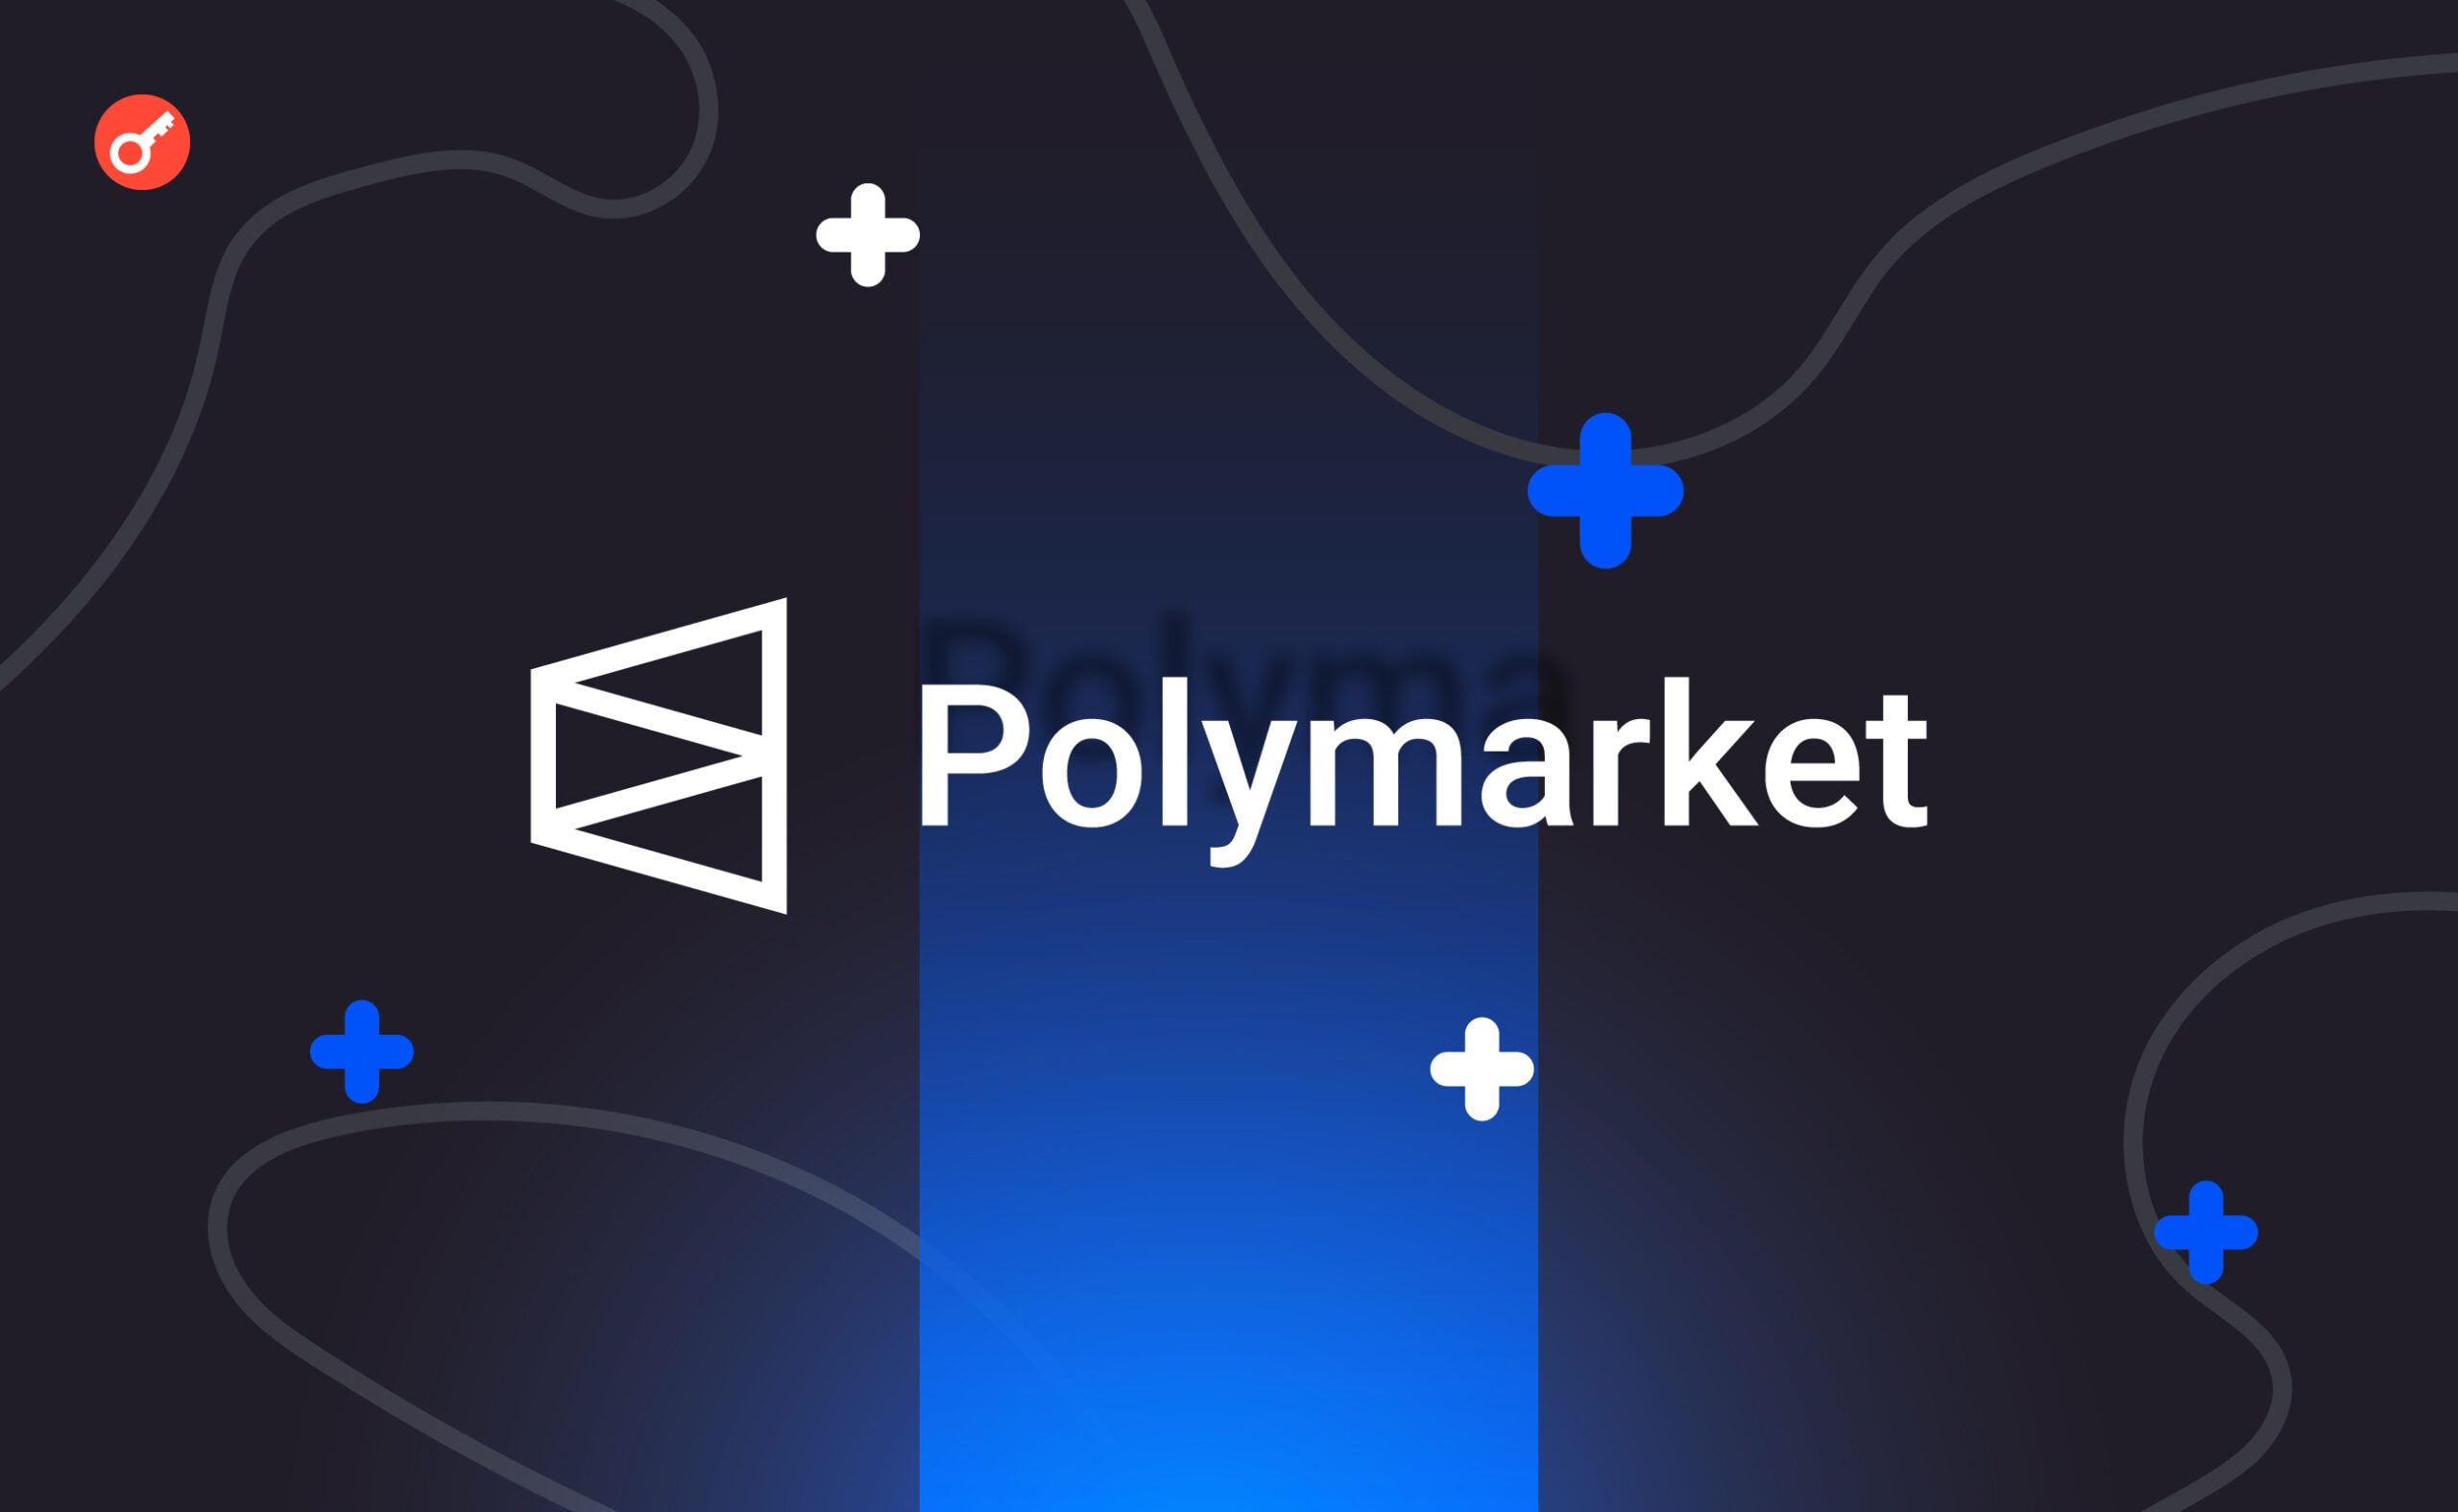 Користувачі Polymarket поставили $8 млн на прогноз щодо спотових біткоїн-ETF. Головний колаж новини.